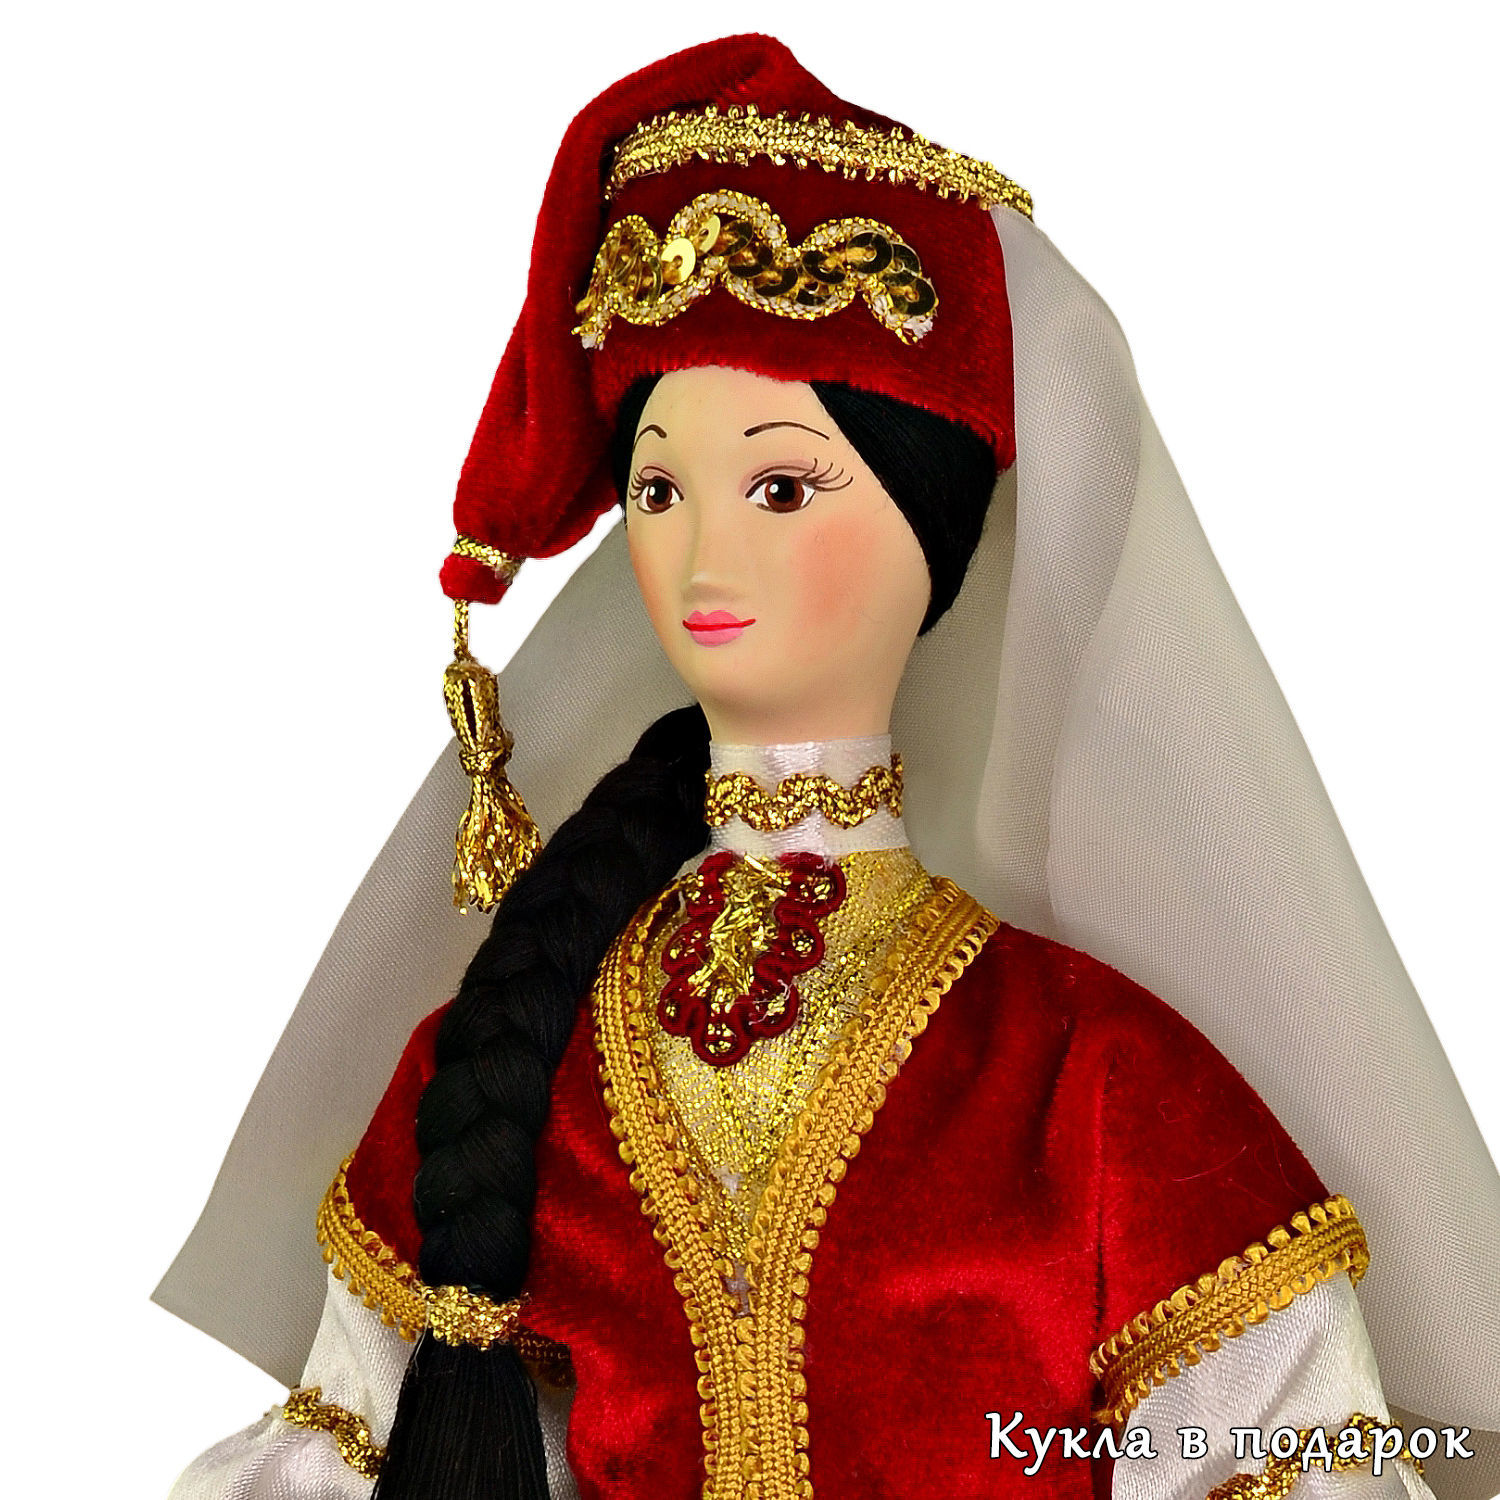 Кукла татарин в национальном костюме